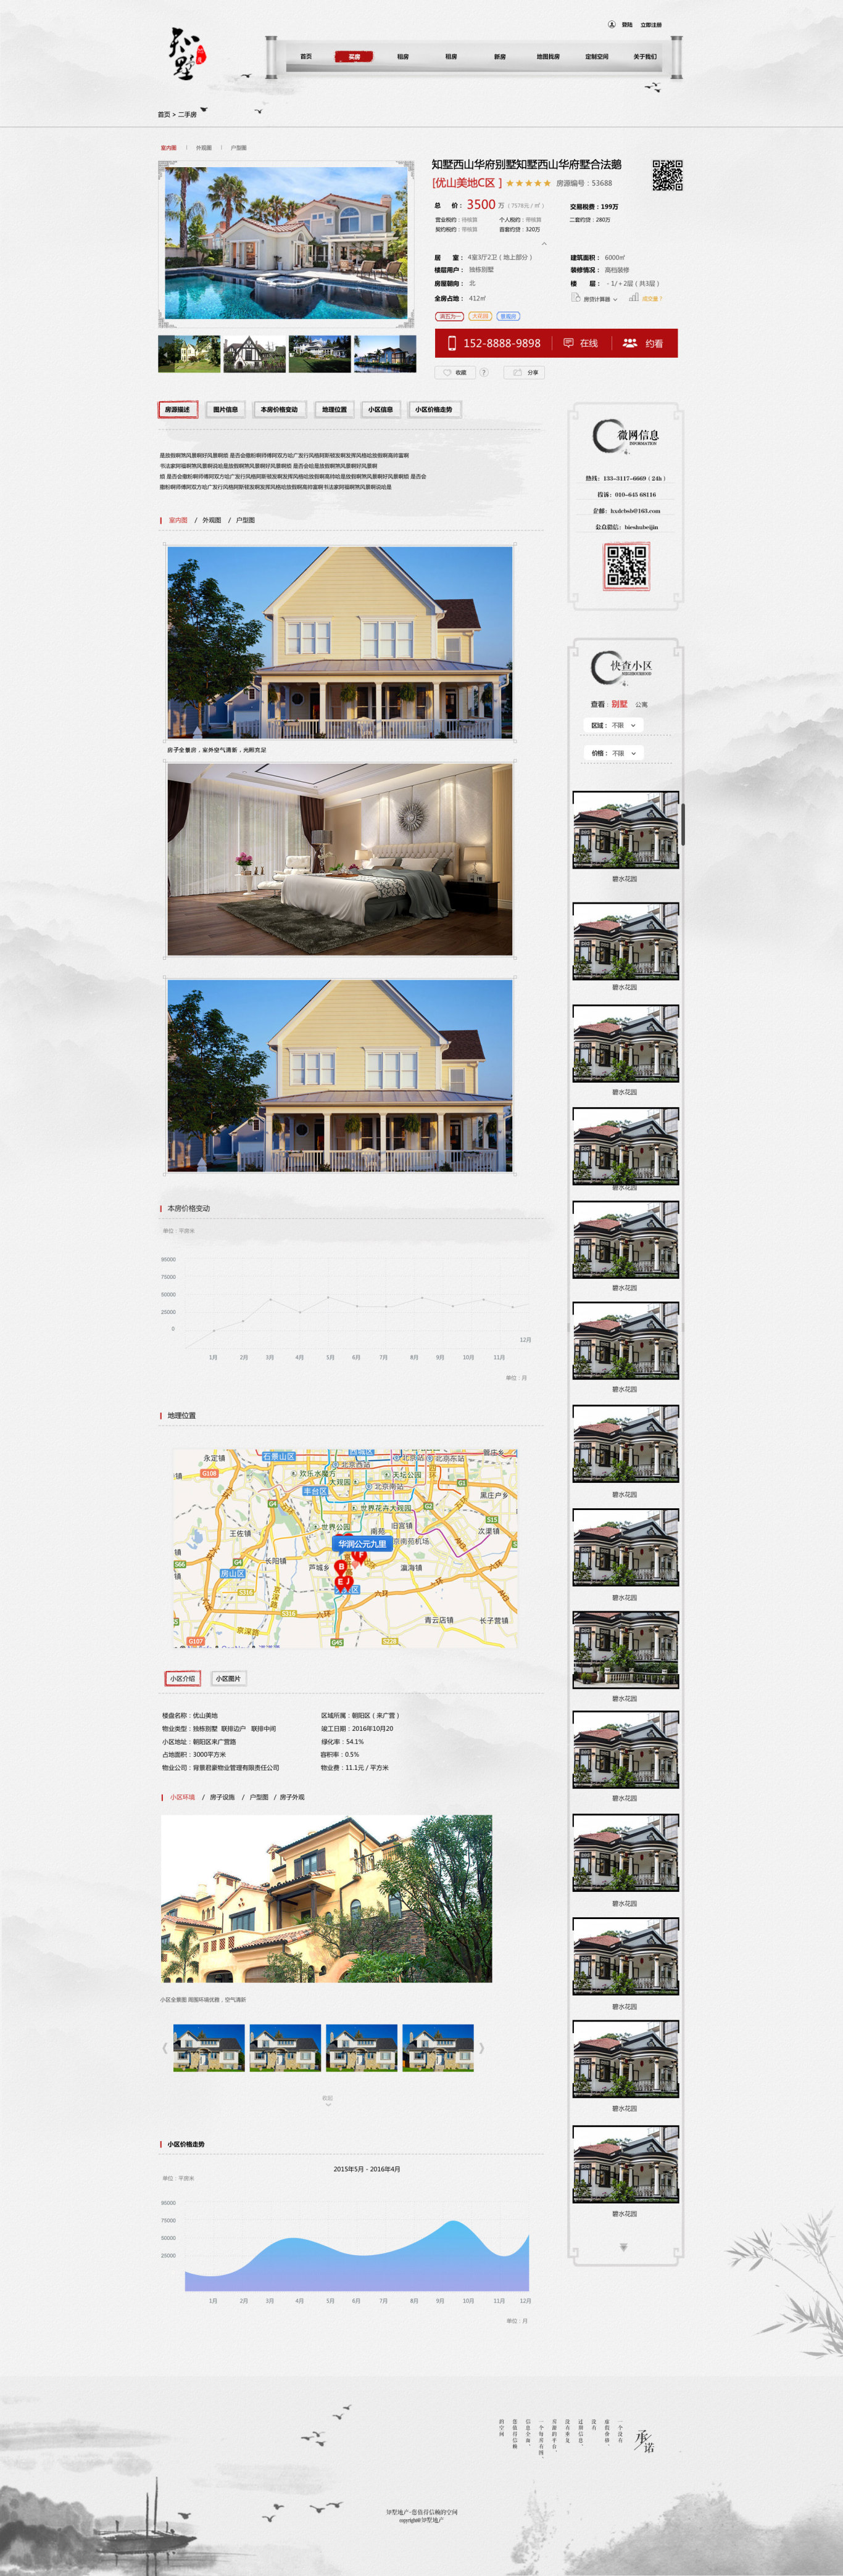 知墅地产整体网站界面设计图3